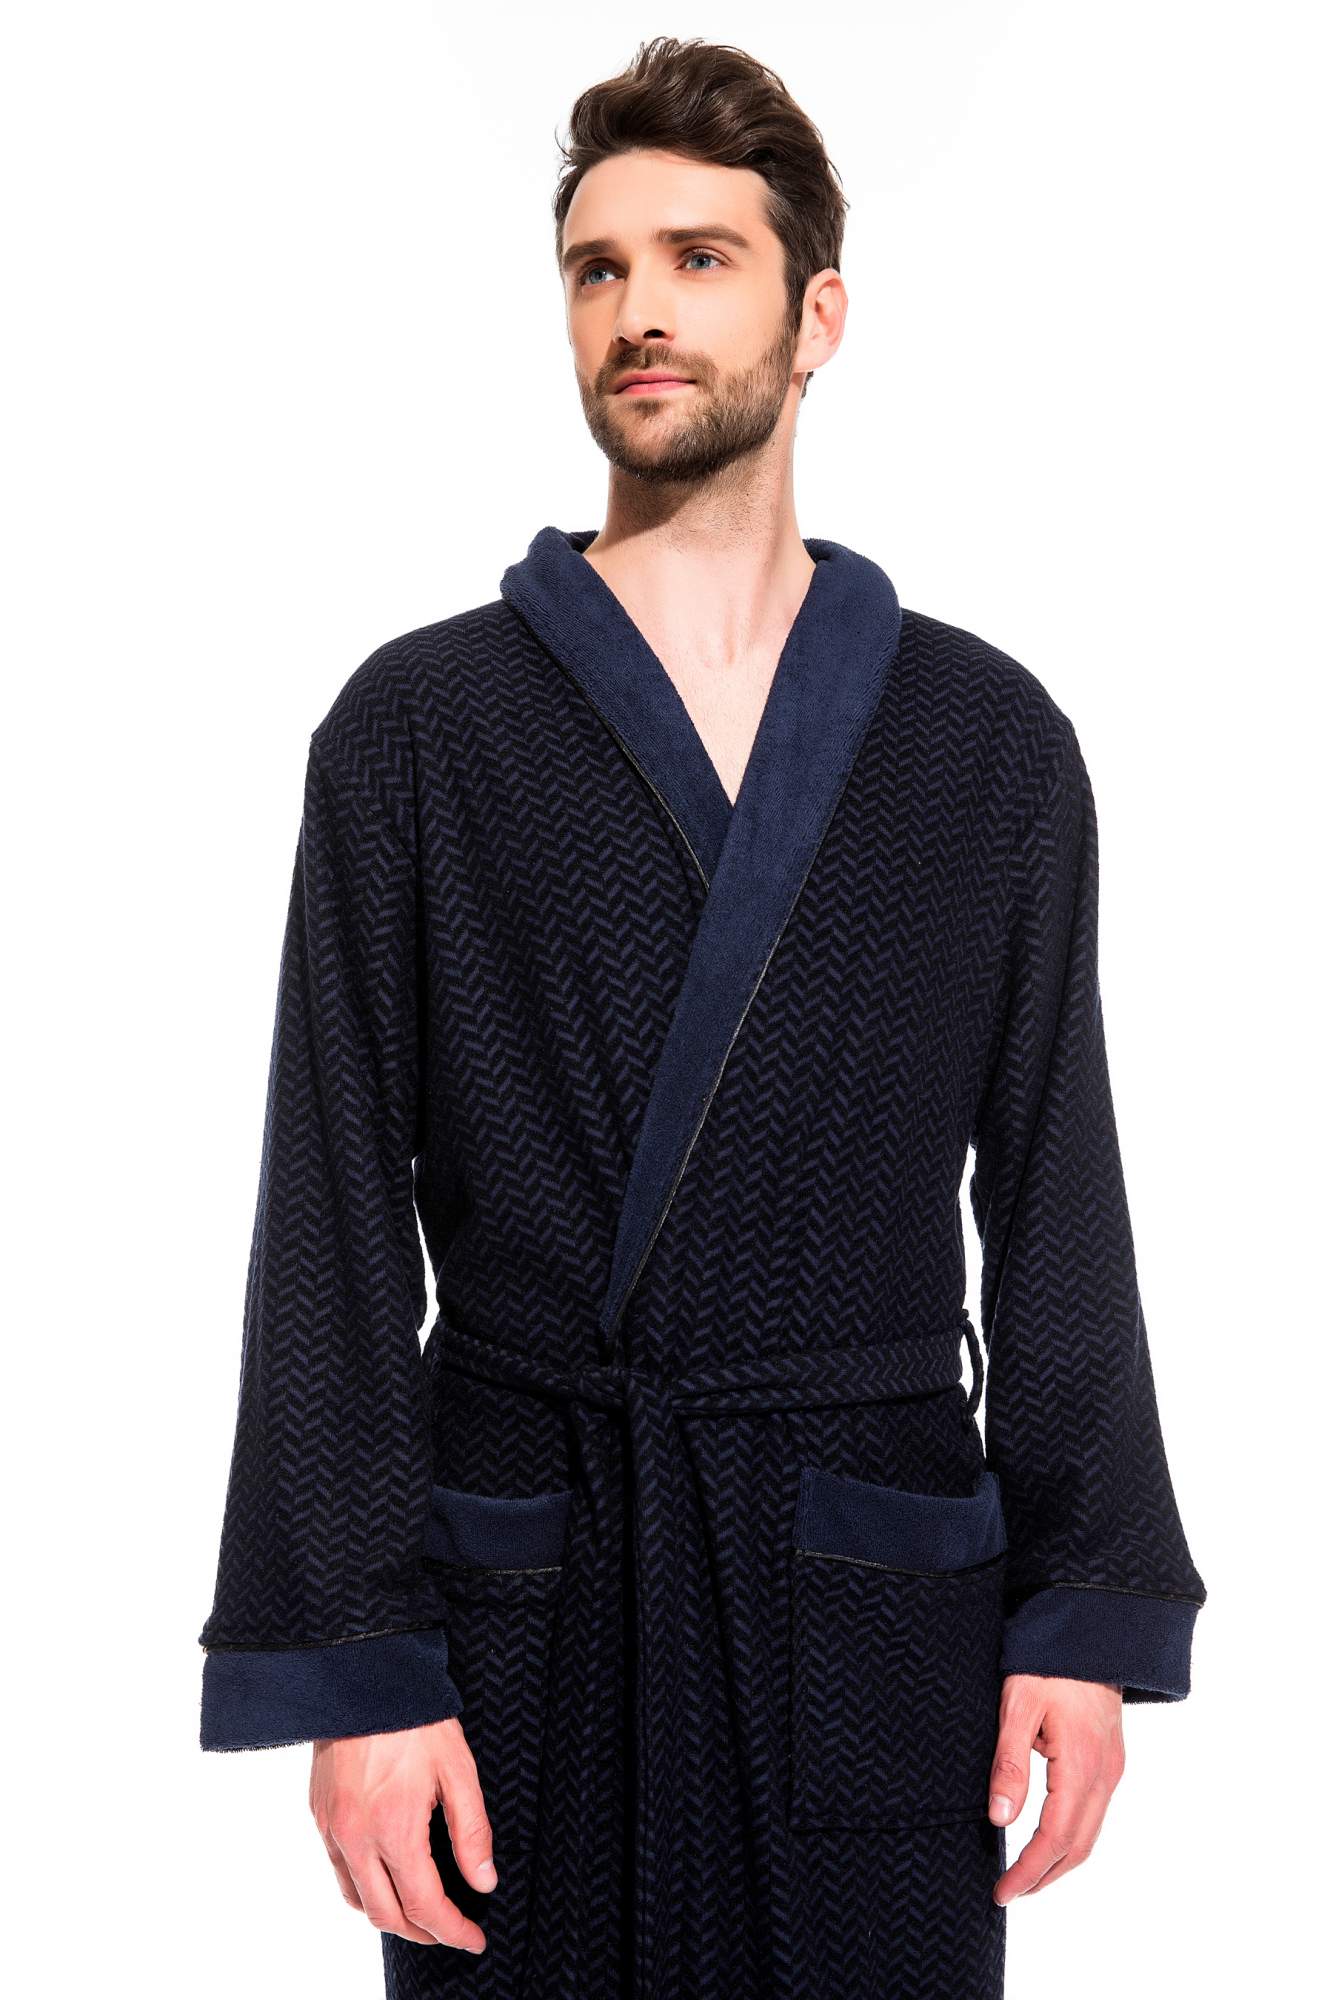 Мужской облегченный махровый халат из бамбука Peche Monnaie 419, синий, XL